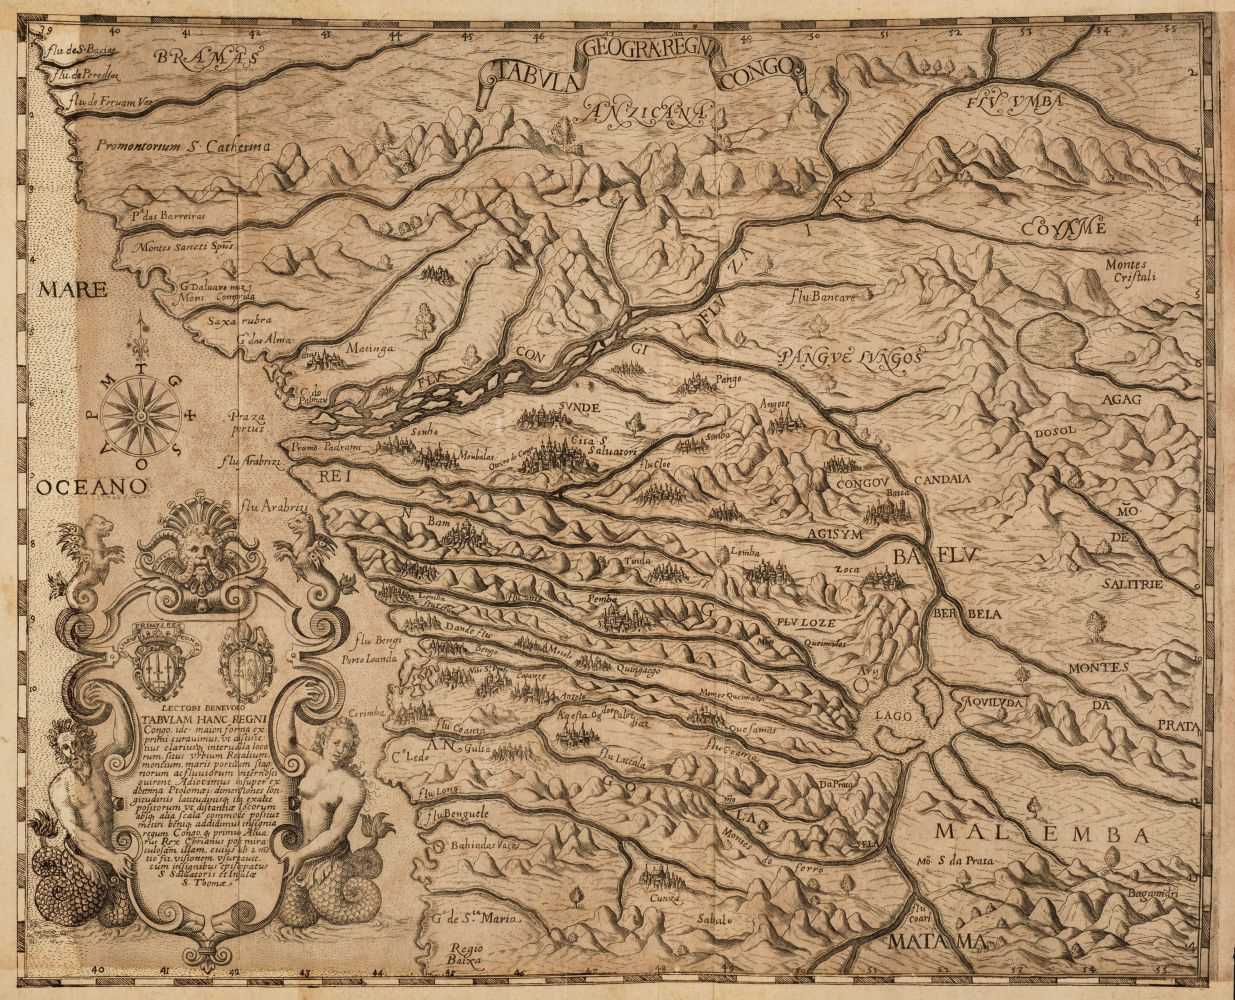 Lot 12 - De Bry (Johann Theodore). Regnum Congo, Frankfurt: Durch Matthias Becker, 1609